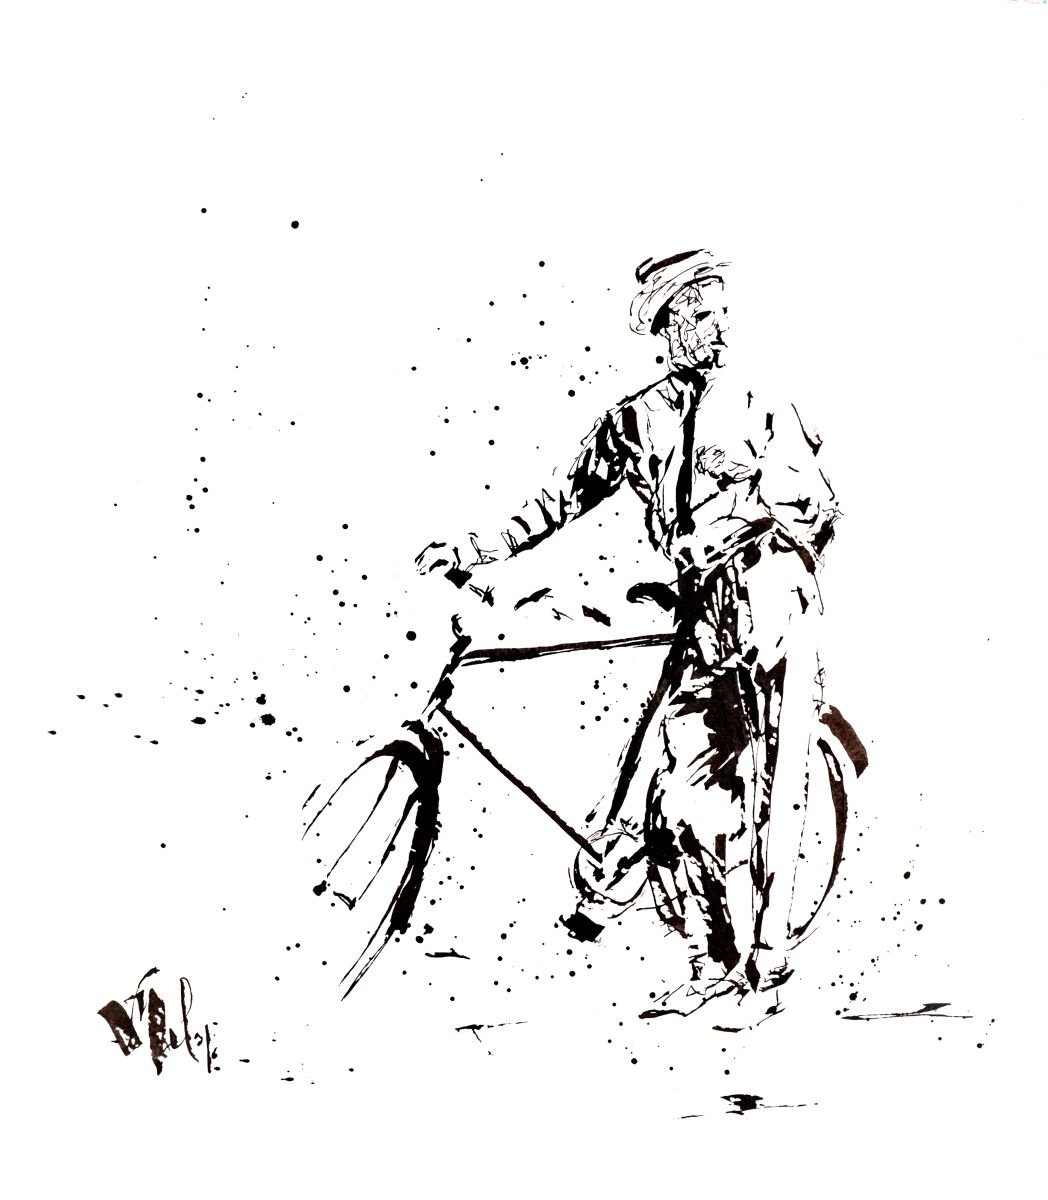 bicicleta by Victor de Melo